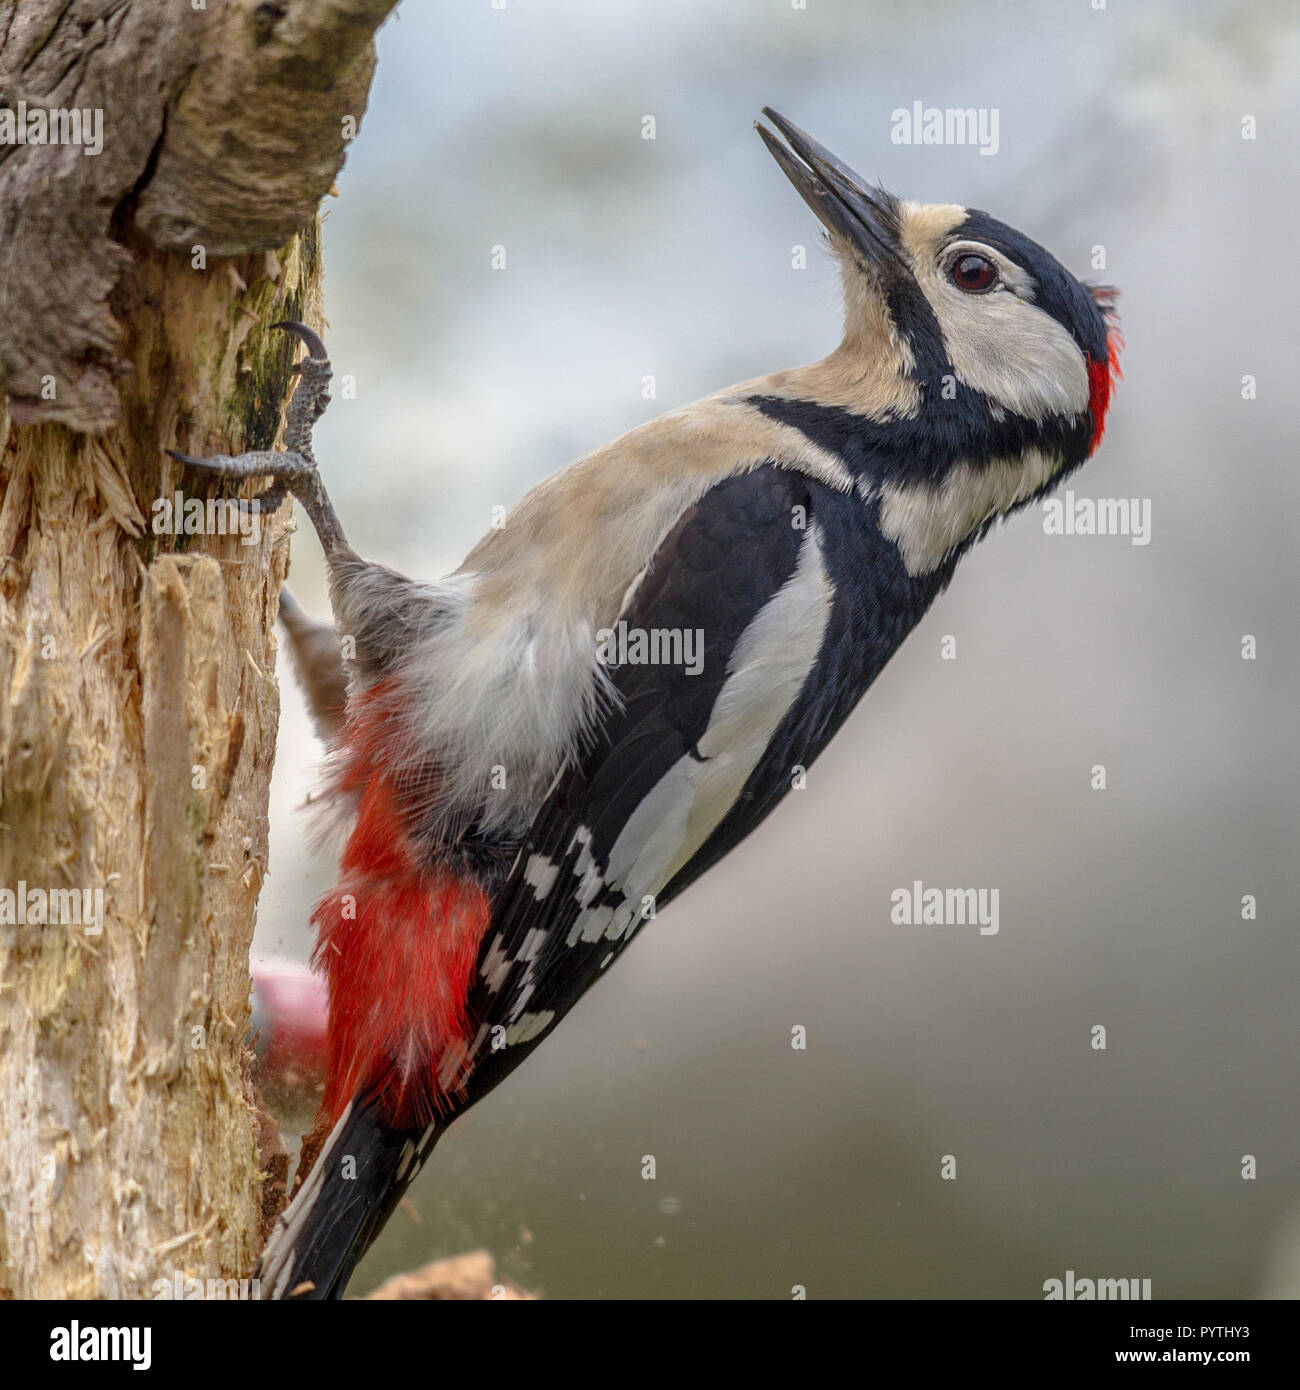 Great spotted woodpecker (Dendrocopos major) perché sur un arbre en position verticale. Ce noir, blanc avec des oiseaux forestiers rouge est répartie dans l'ensemble Banque D'Images